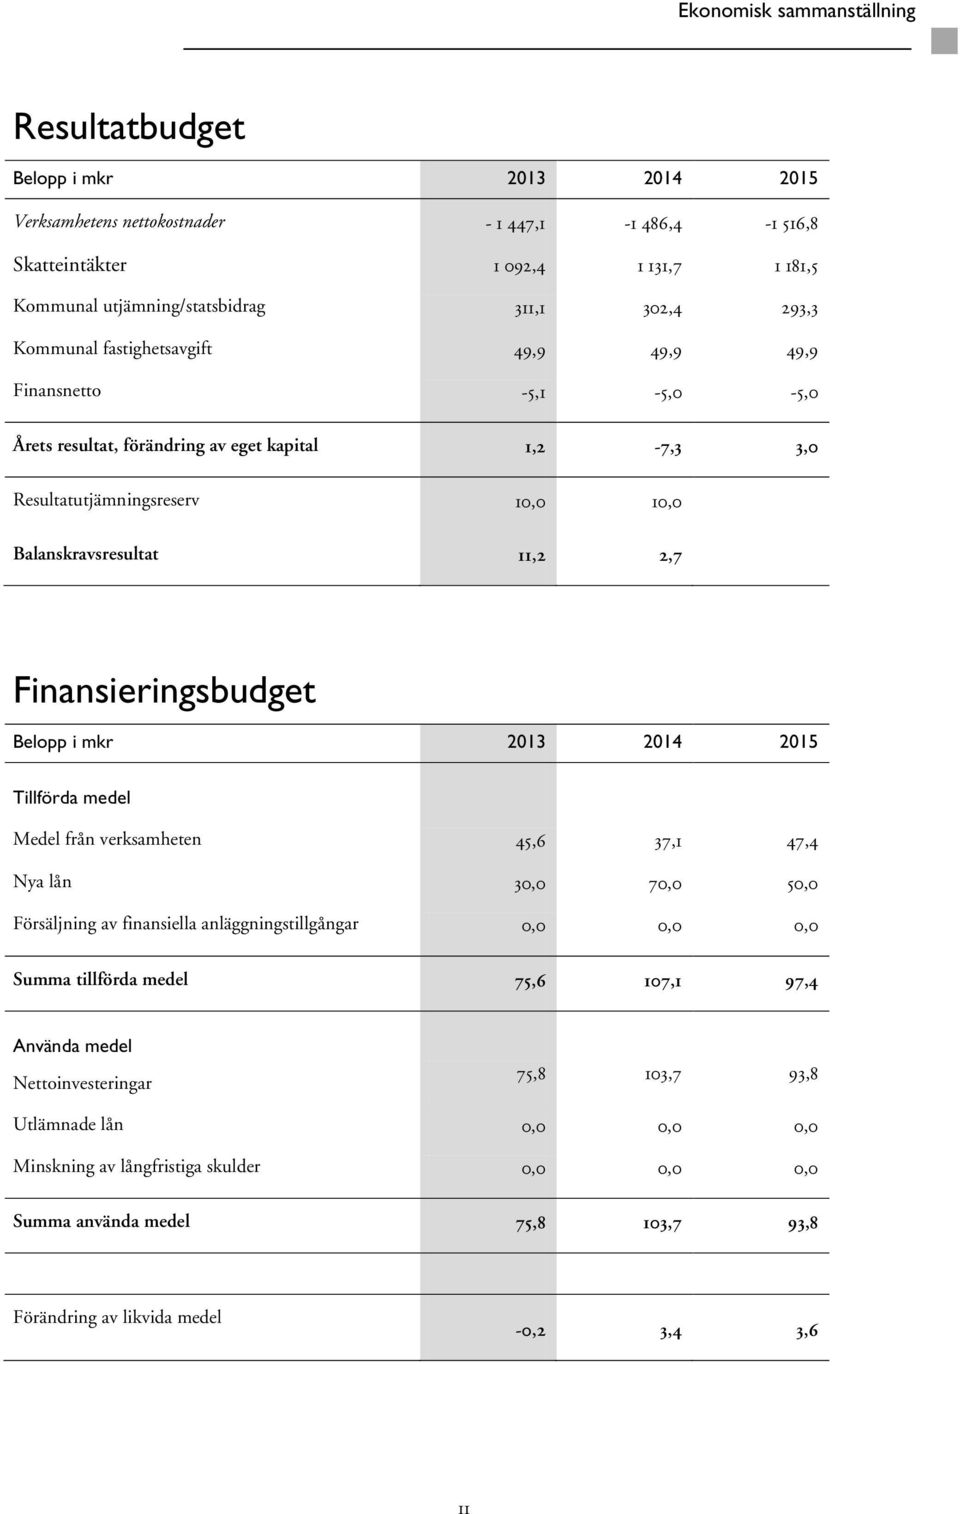 Finansieringsbudget Belopp i mkr 2013 2014 2015 Tillförda medel Medel från verksamheten 45,6 37,1 47,4 Nya lån 30,0 70,0 50,0 Försäljning av finansiella anläggningstillgångar 0,0 0,0 0,0 Summa